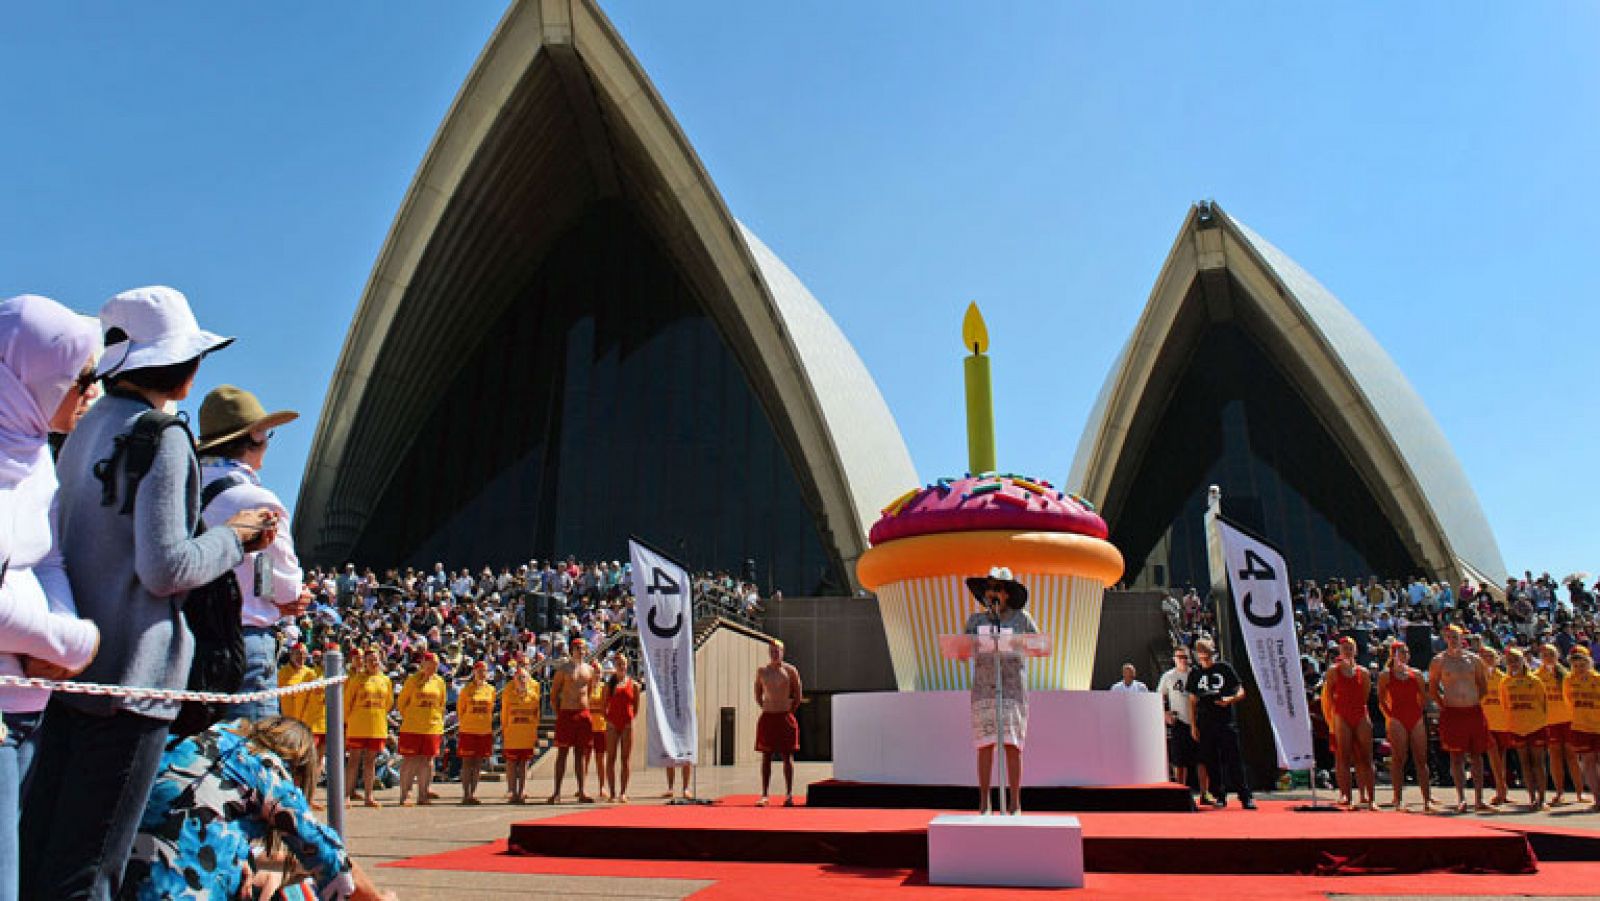 Sidney celebra el 40 aniversario de la Casa de la Ópera, entre los actos, se han repartido 6.000 magdalenas y el hijo del arquitecto que lo diseñó, Jørn Utzon, dijo que el edificio es un tributo al espìritu australiano.